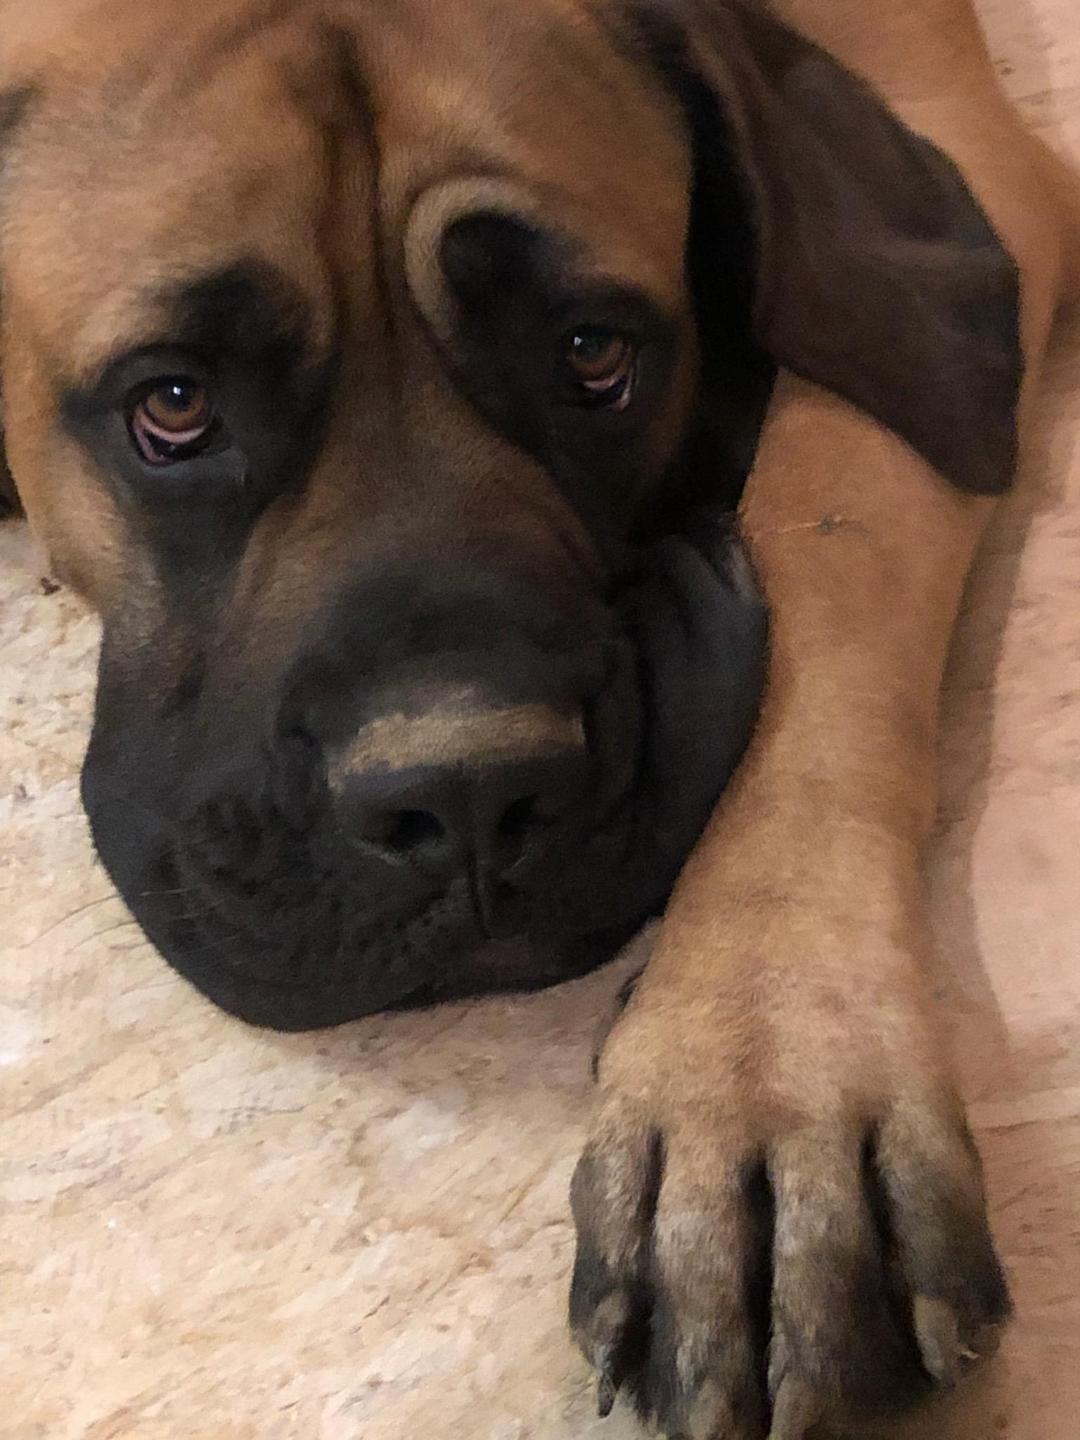 sad looking dog